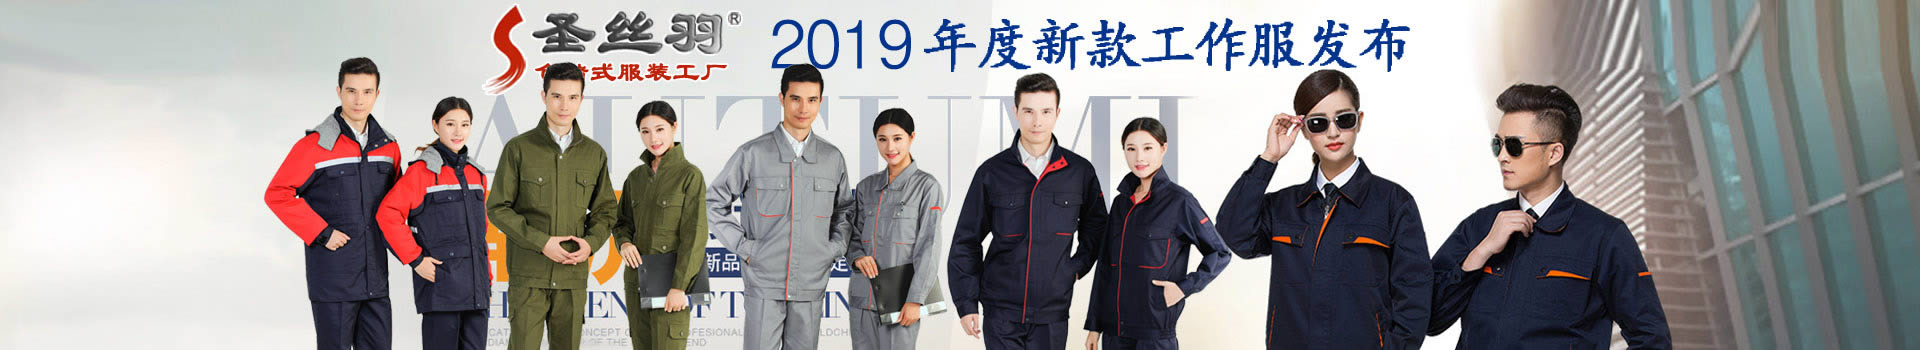 圣丝羽品牌工作服,常州工作服,昆山工作服,无锡工作服,苏州工作服,上海工作服,工作服厂家